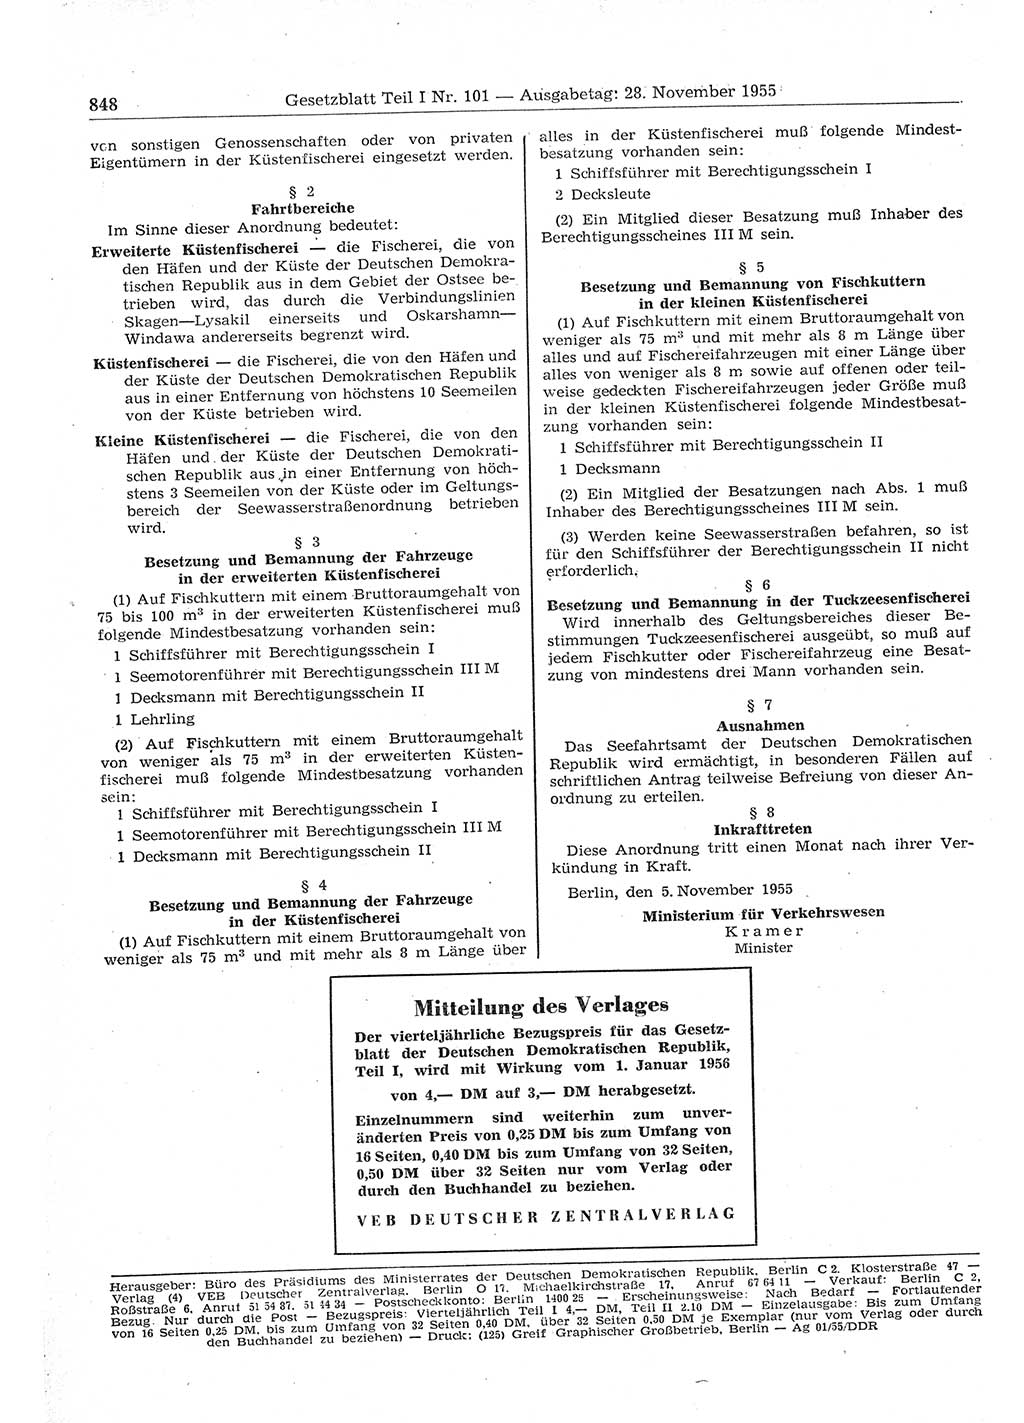 Gesetzblatt (GBl.) der Deutschen Demokratischen Republik (DDR) Teil Ⅰ 1955, Seite 848 (GBl. DDR Ⅰ 1955, S. 848)